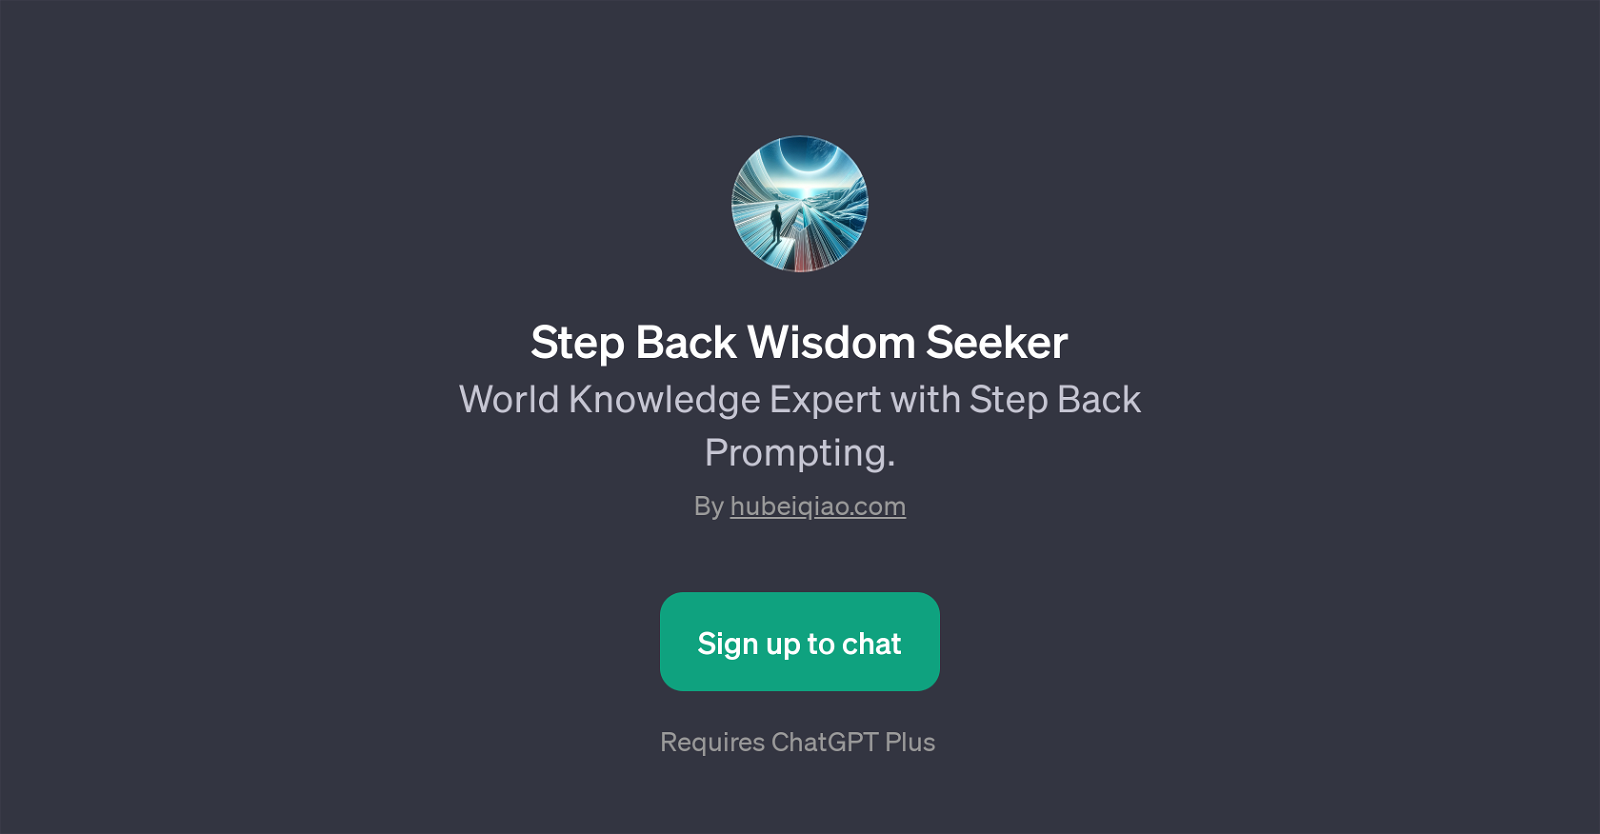 Step Back Wisdom Seeker website